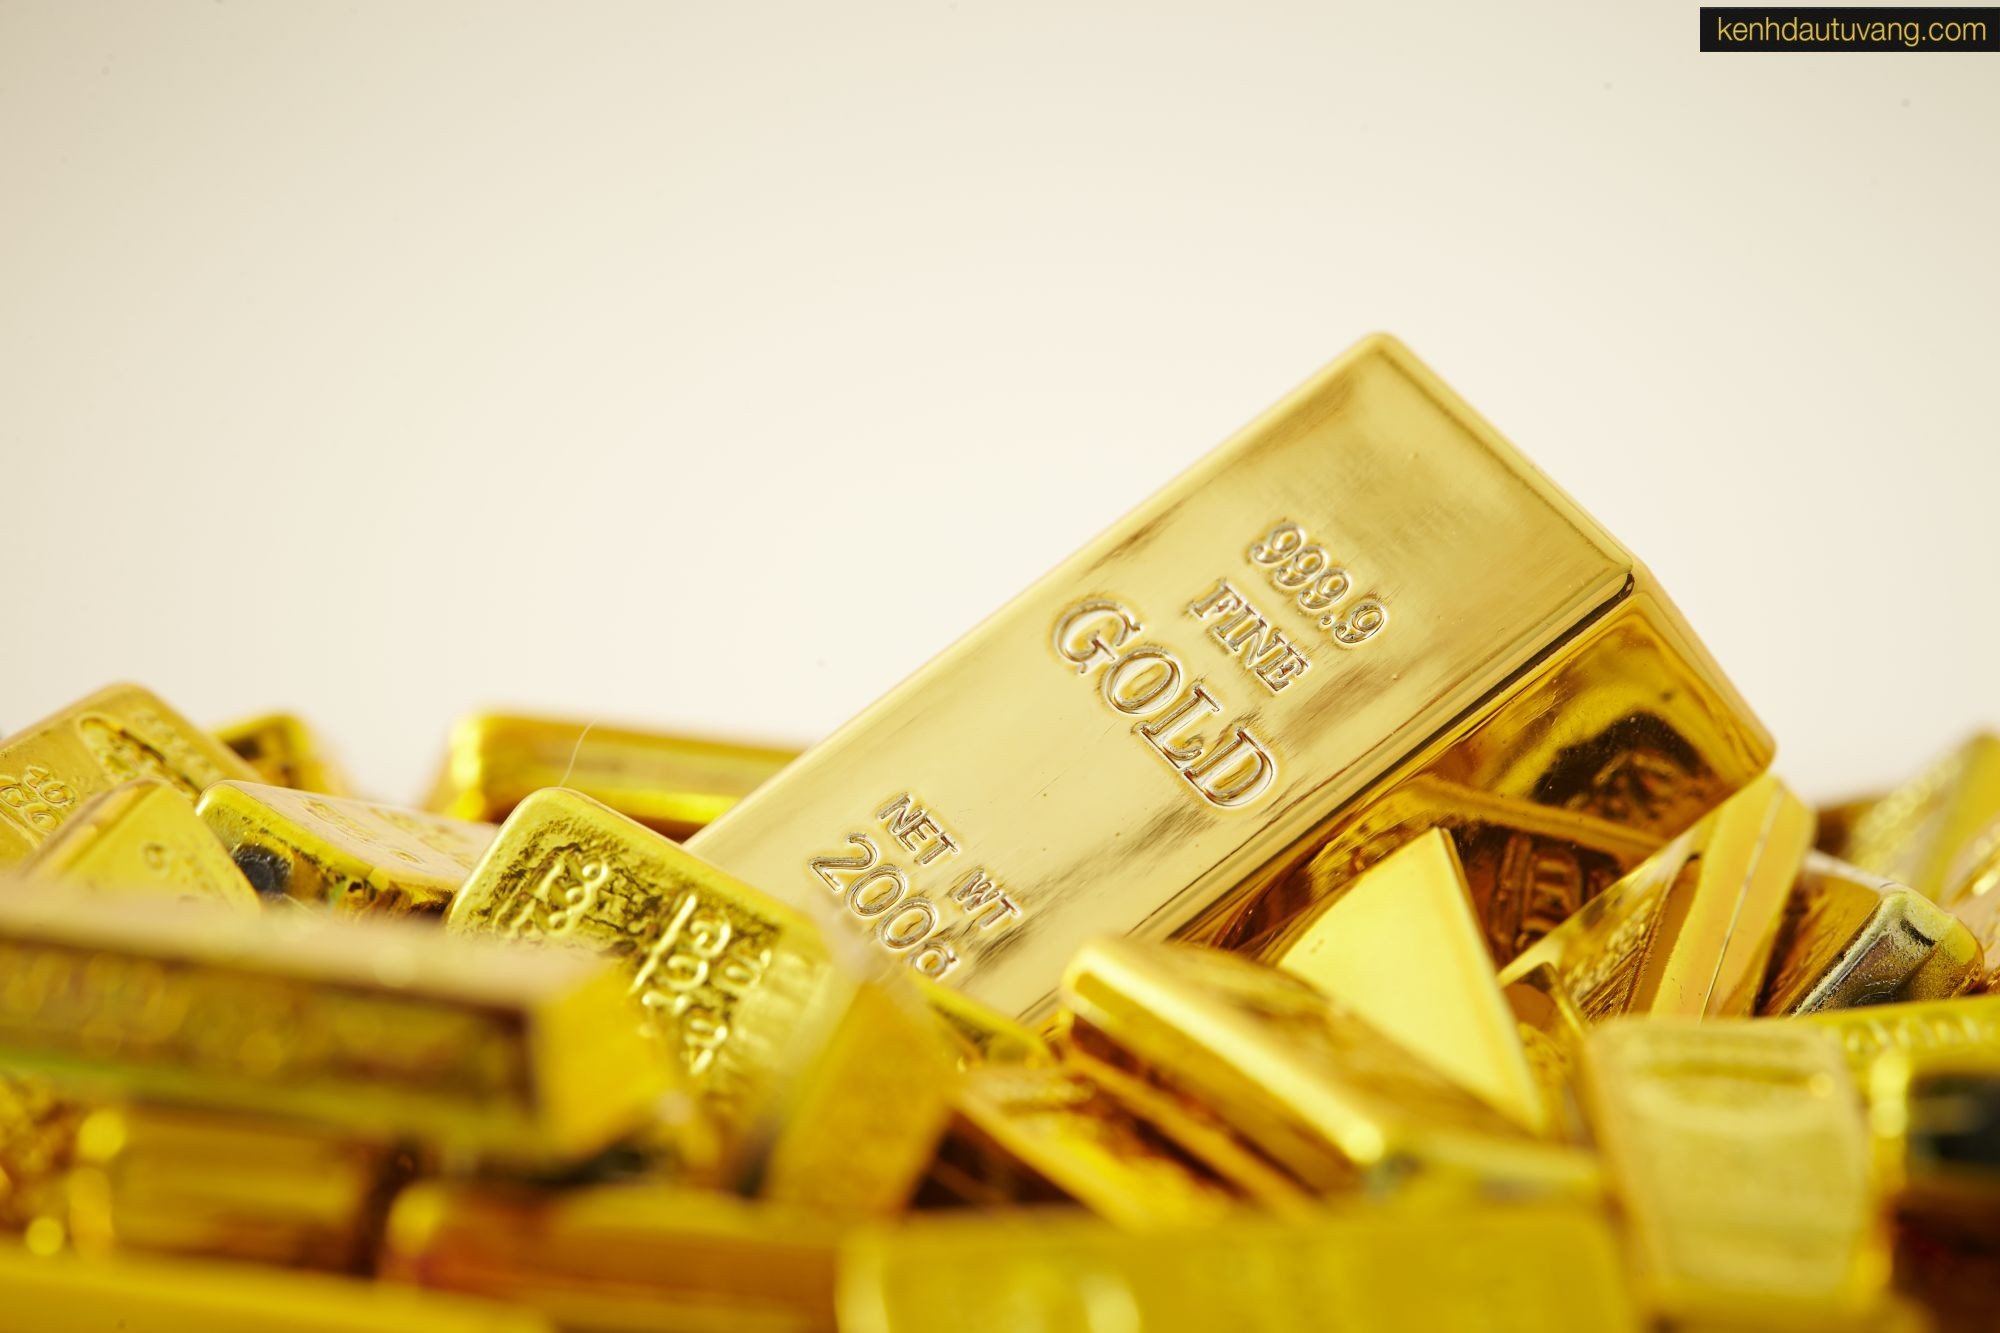 Có nhiều yếu tố ảnh hưởng đến giá Vàng như giá đồng tiền đô la, lạm phát,...